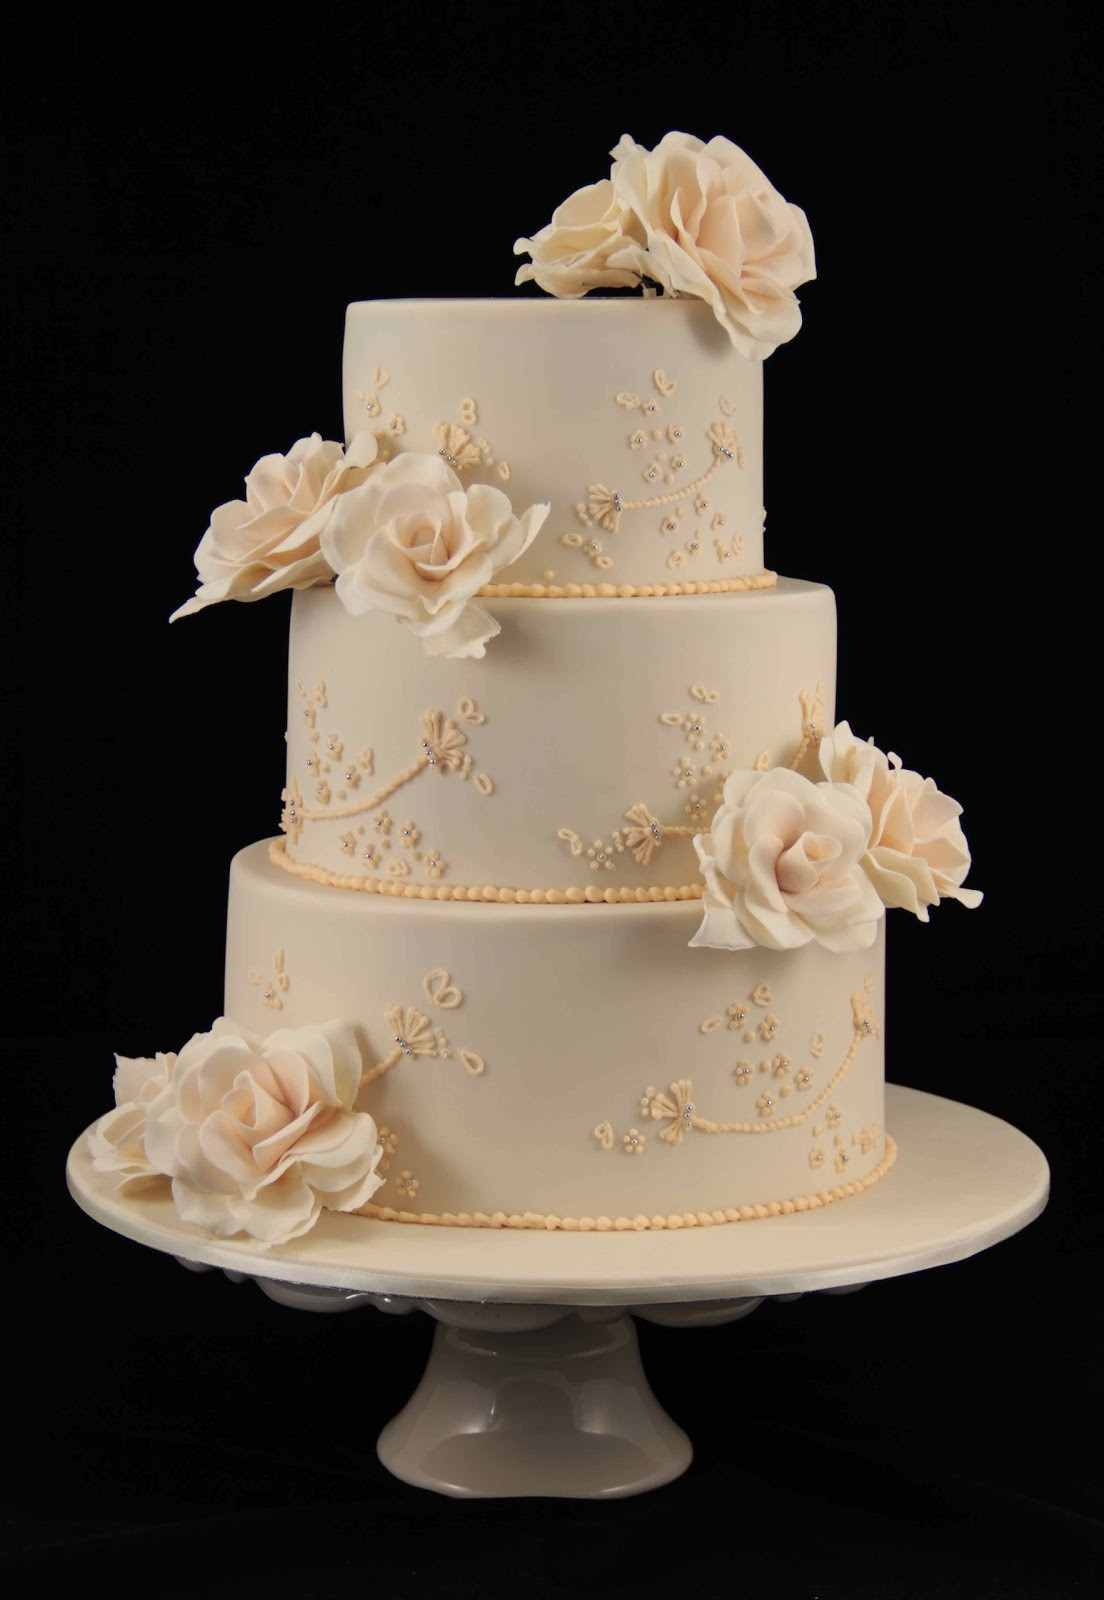 Wedding Cakes Images
 Bakerz Dad Rose Wedding Cake